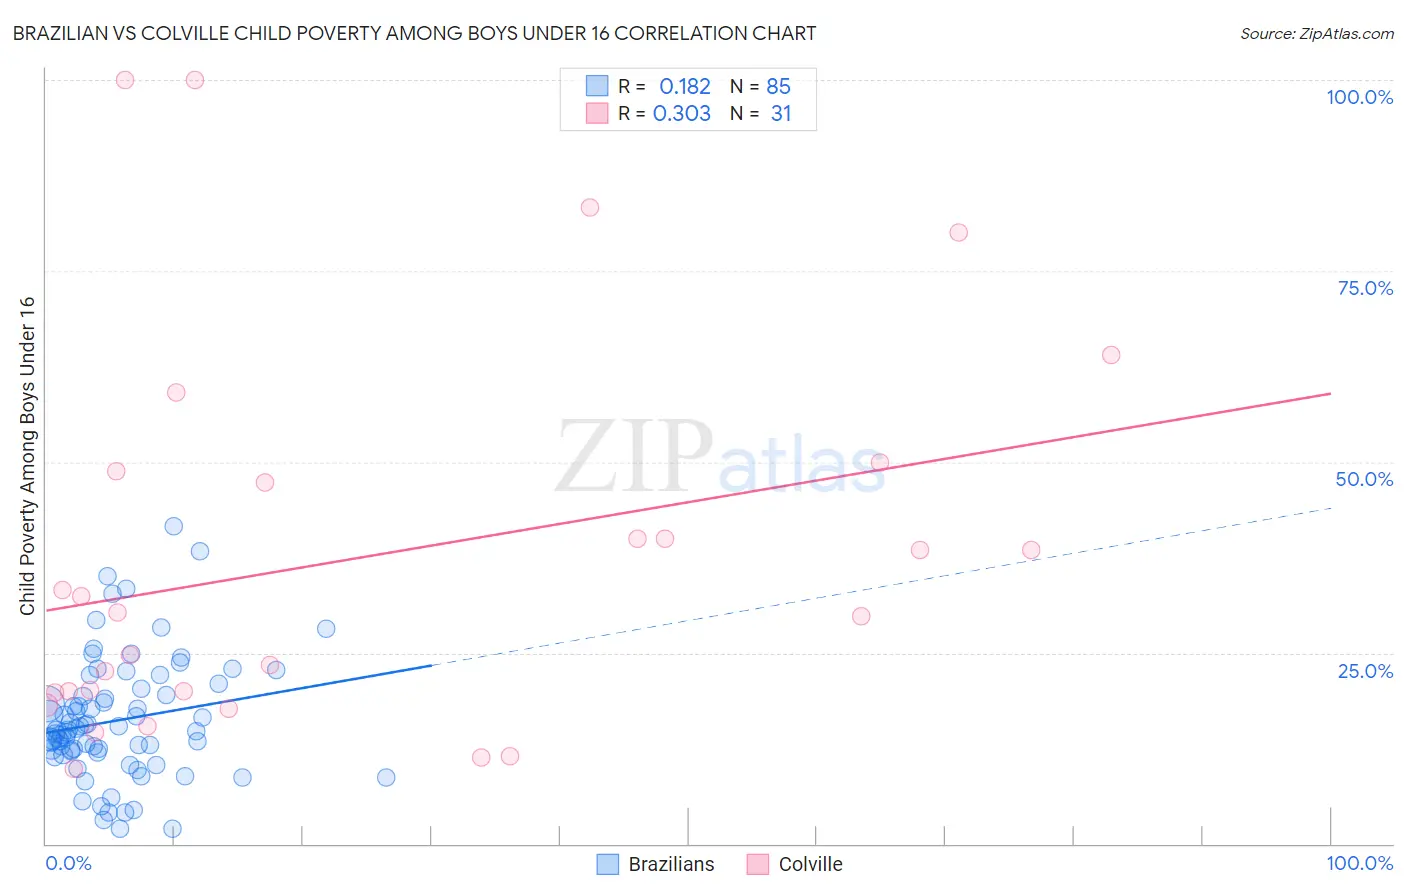 Brazilian vs Colville Child Poverty Among Boys Under 16